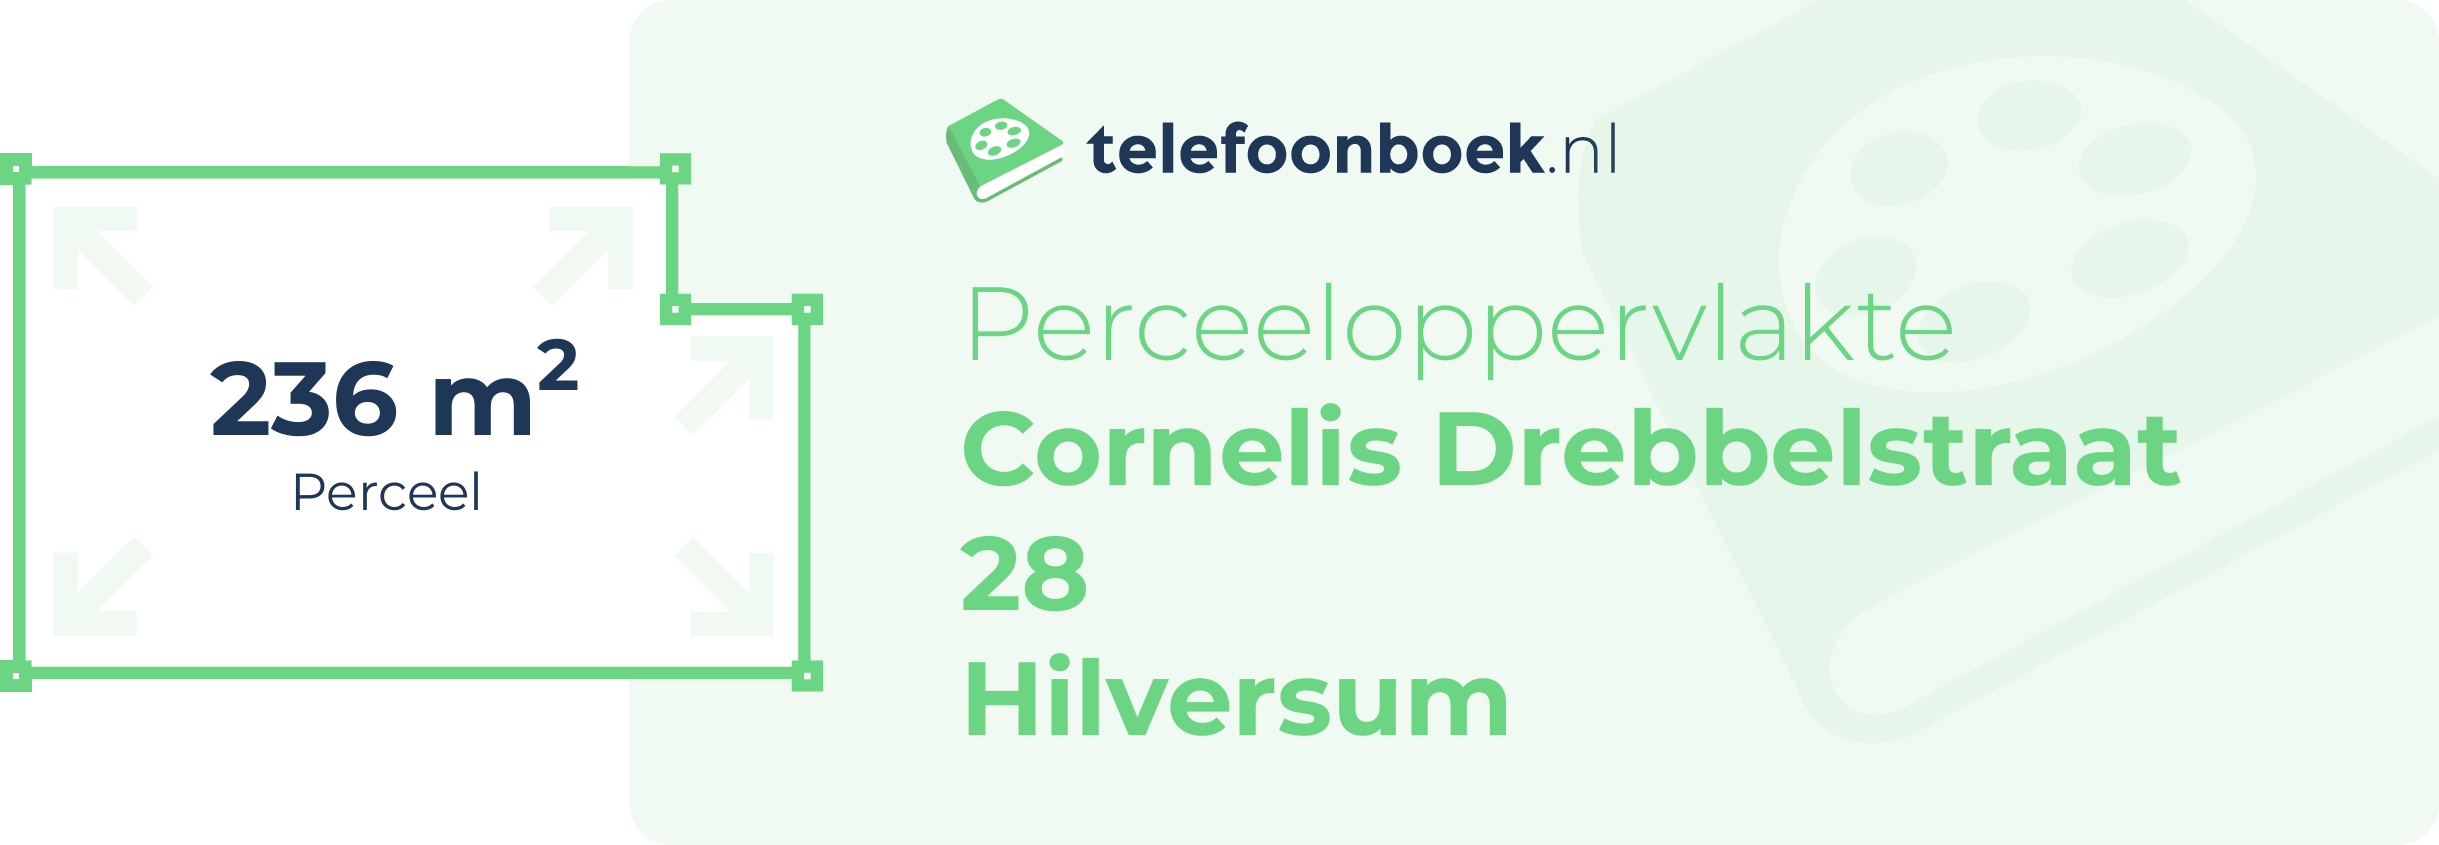 Perceeloppervlakte Cornelis Drebbelstraat 28 Hilversum